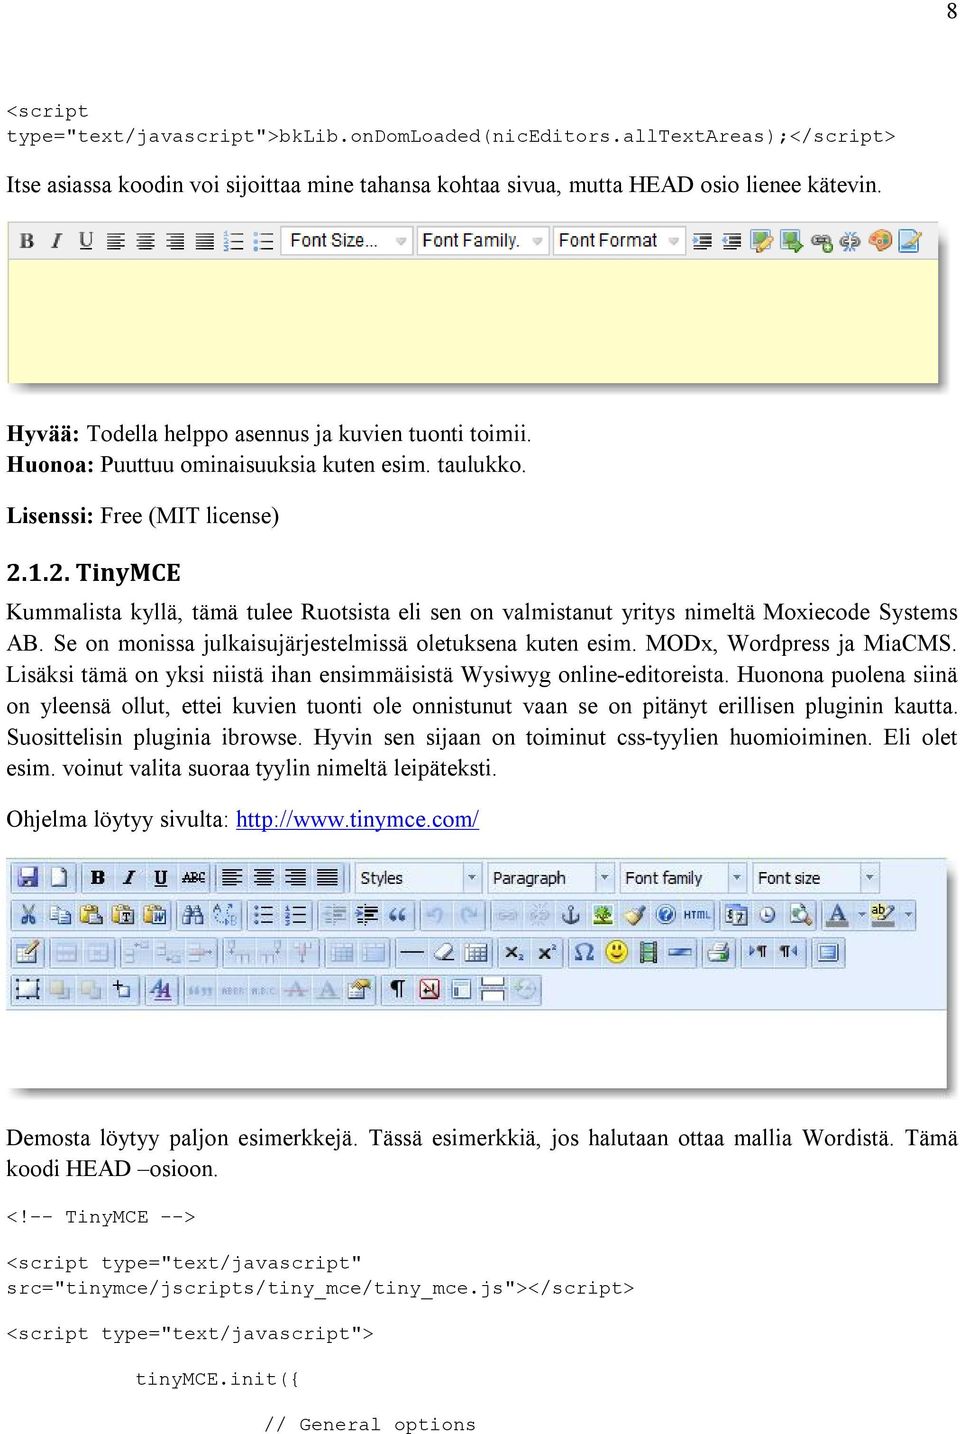 1.2. TinyMCE Kummalista kyllä, tämä tulee Ruotsista eli sen on valmistanut yritys nimeltä Moxiecode Systems AB. Se on monissa julkaisujärjestelmissä oletuksena kuten esim. MODx, Wordpress ja MiaCMS.